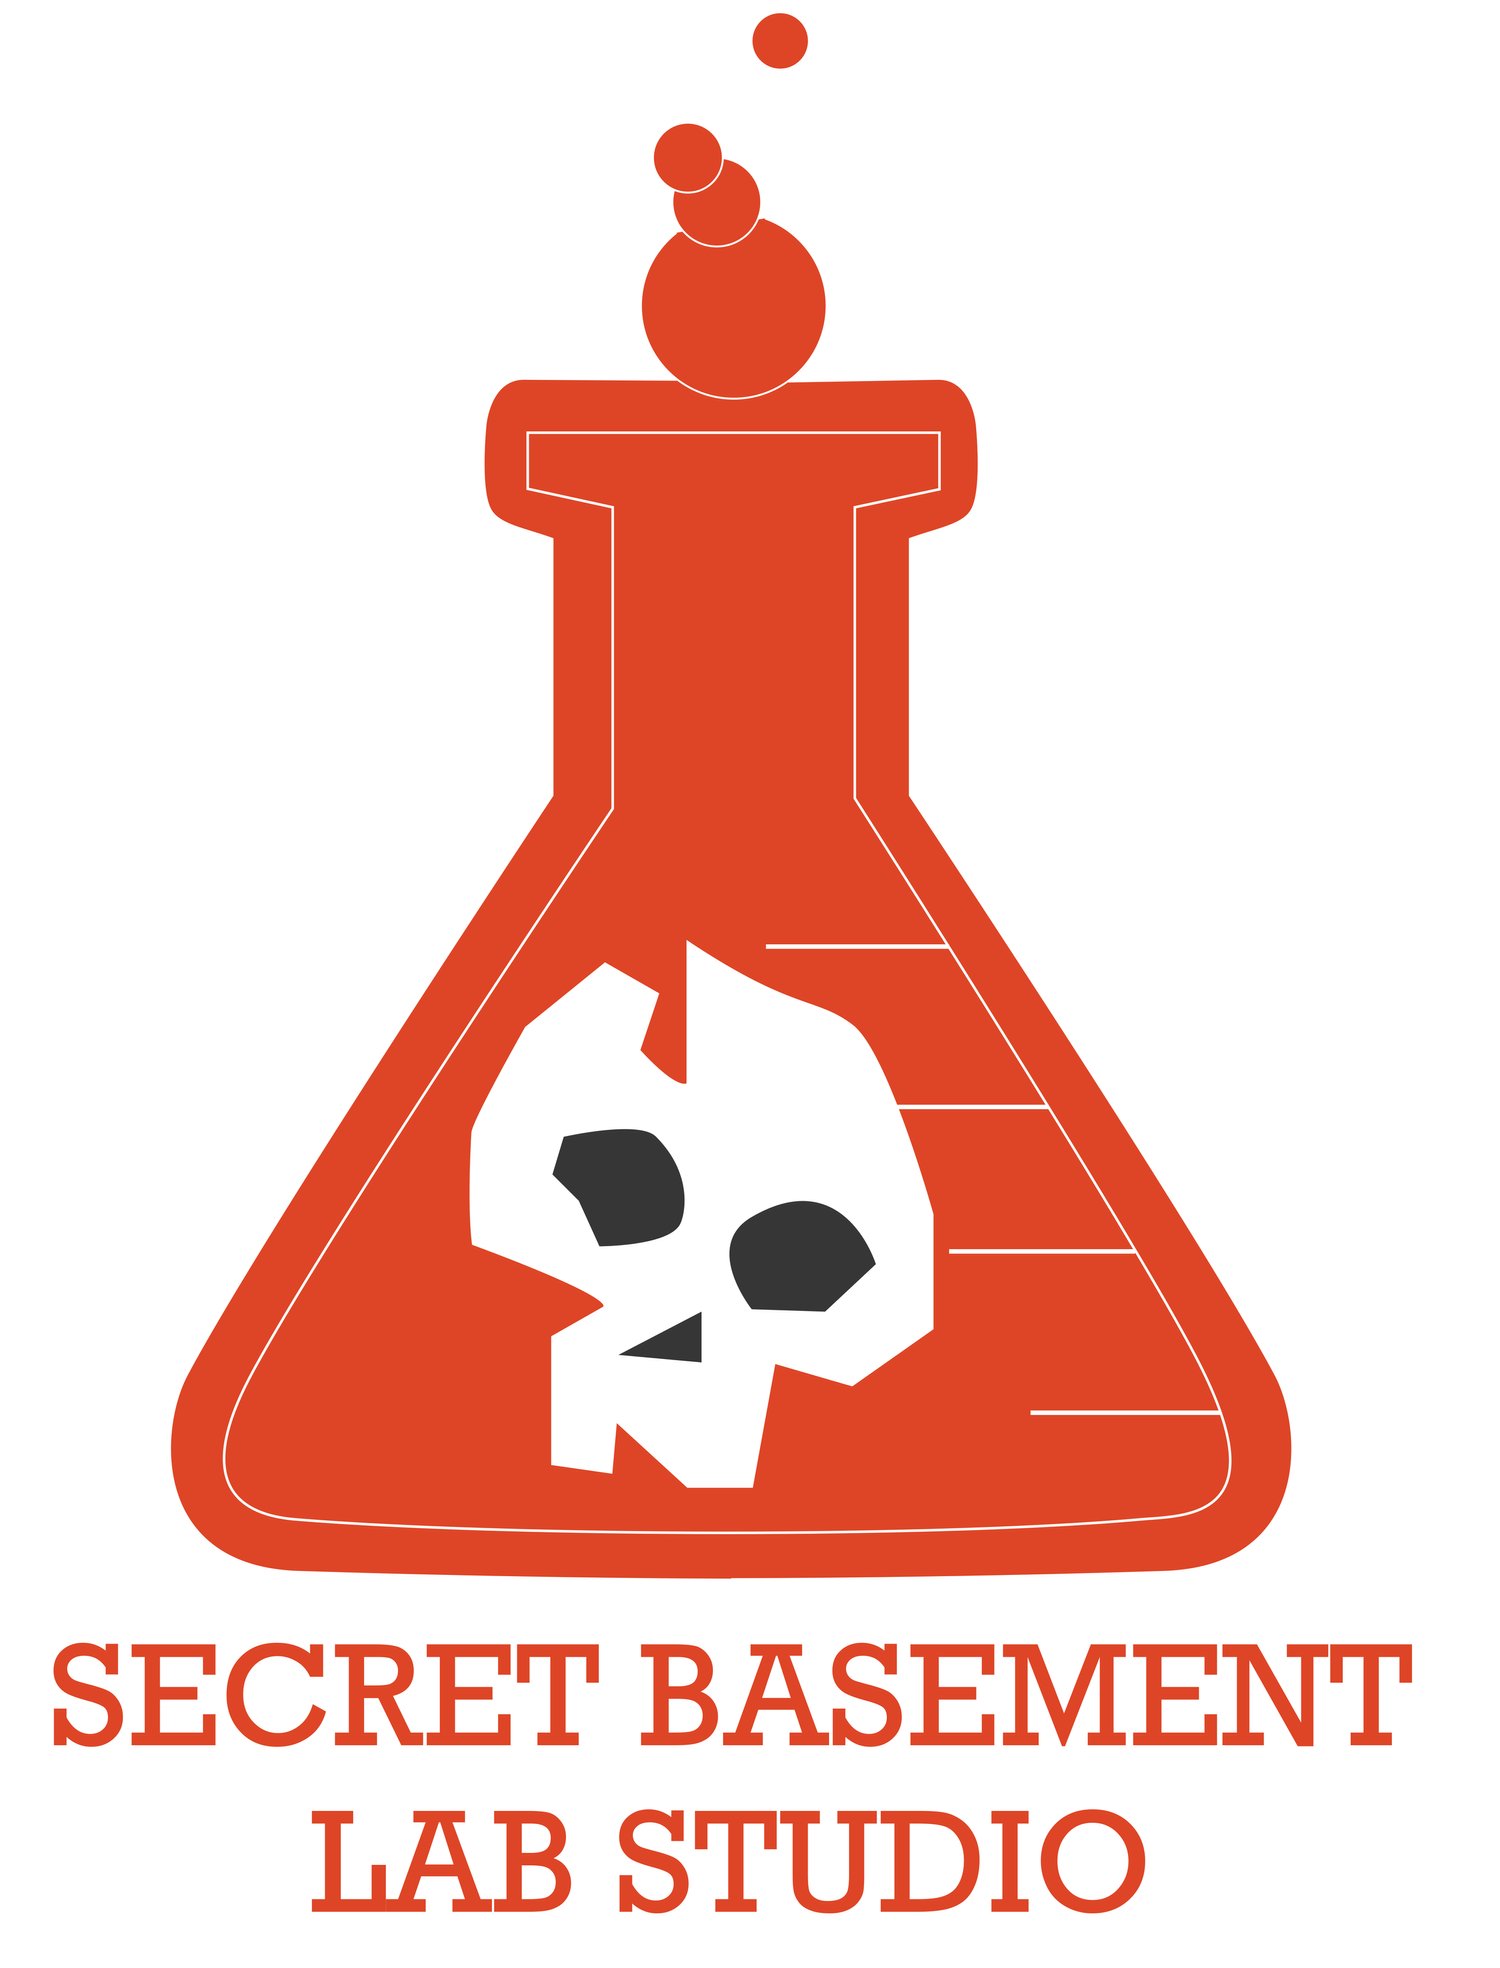 Secret Basement Lab Studio